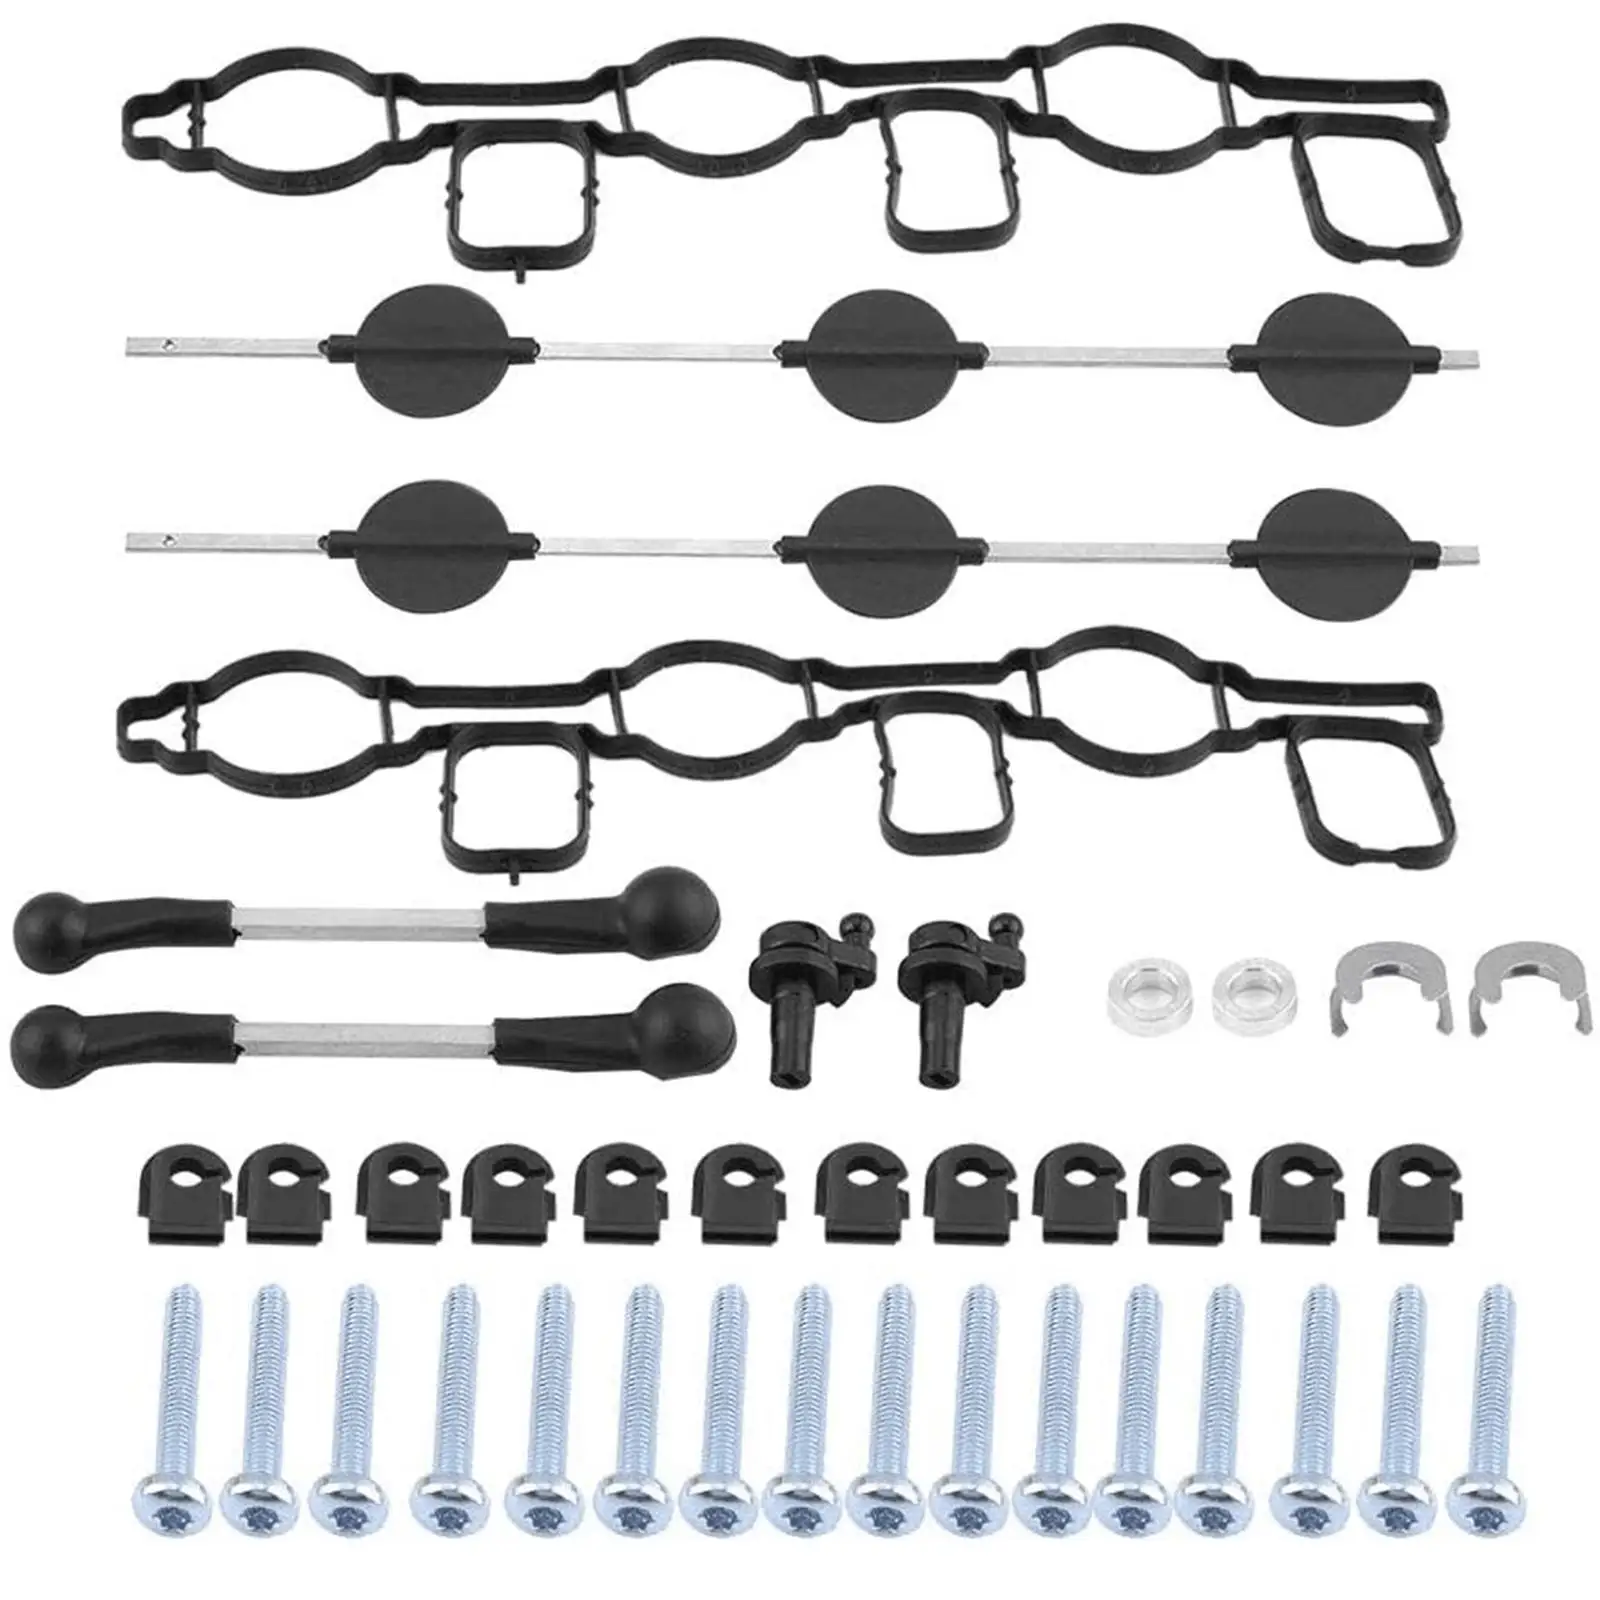 Inlet Intake Manifold Swirl Flap Repair Kit 059129711Ck Replace Set Intake Manifold Fit for Audi for VW 2.7 3.0 Tdi 059129711DC